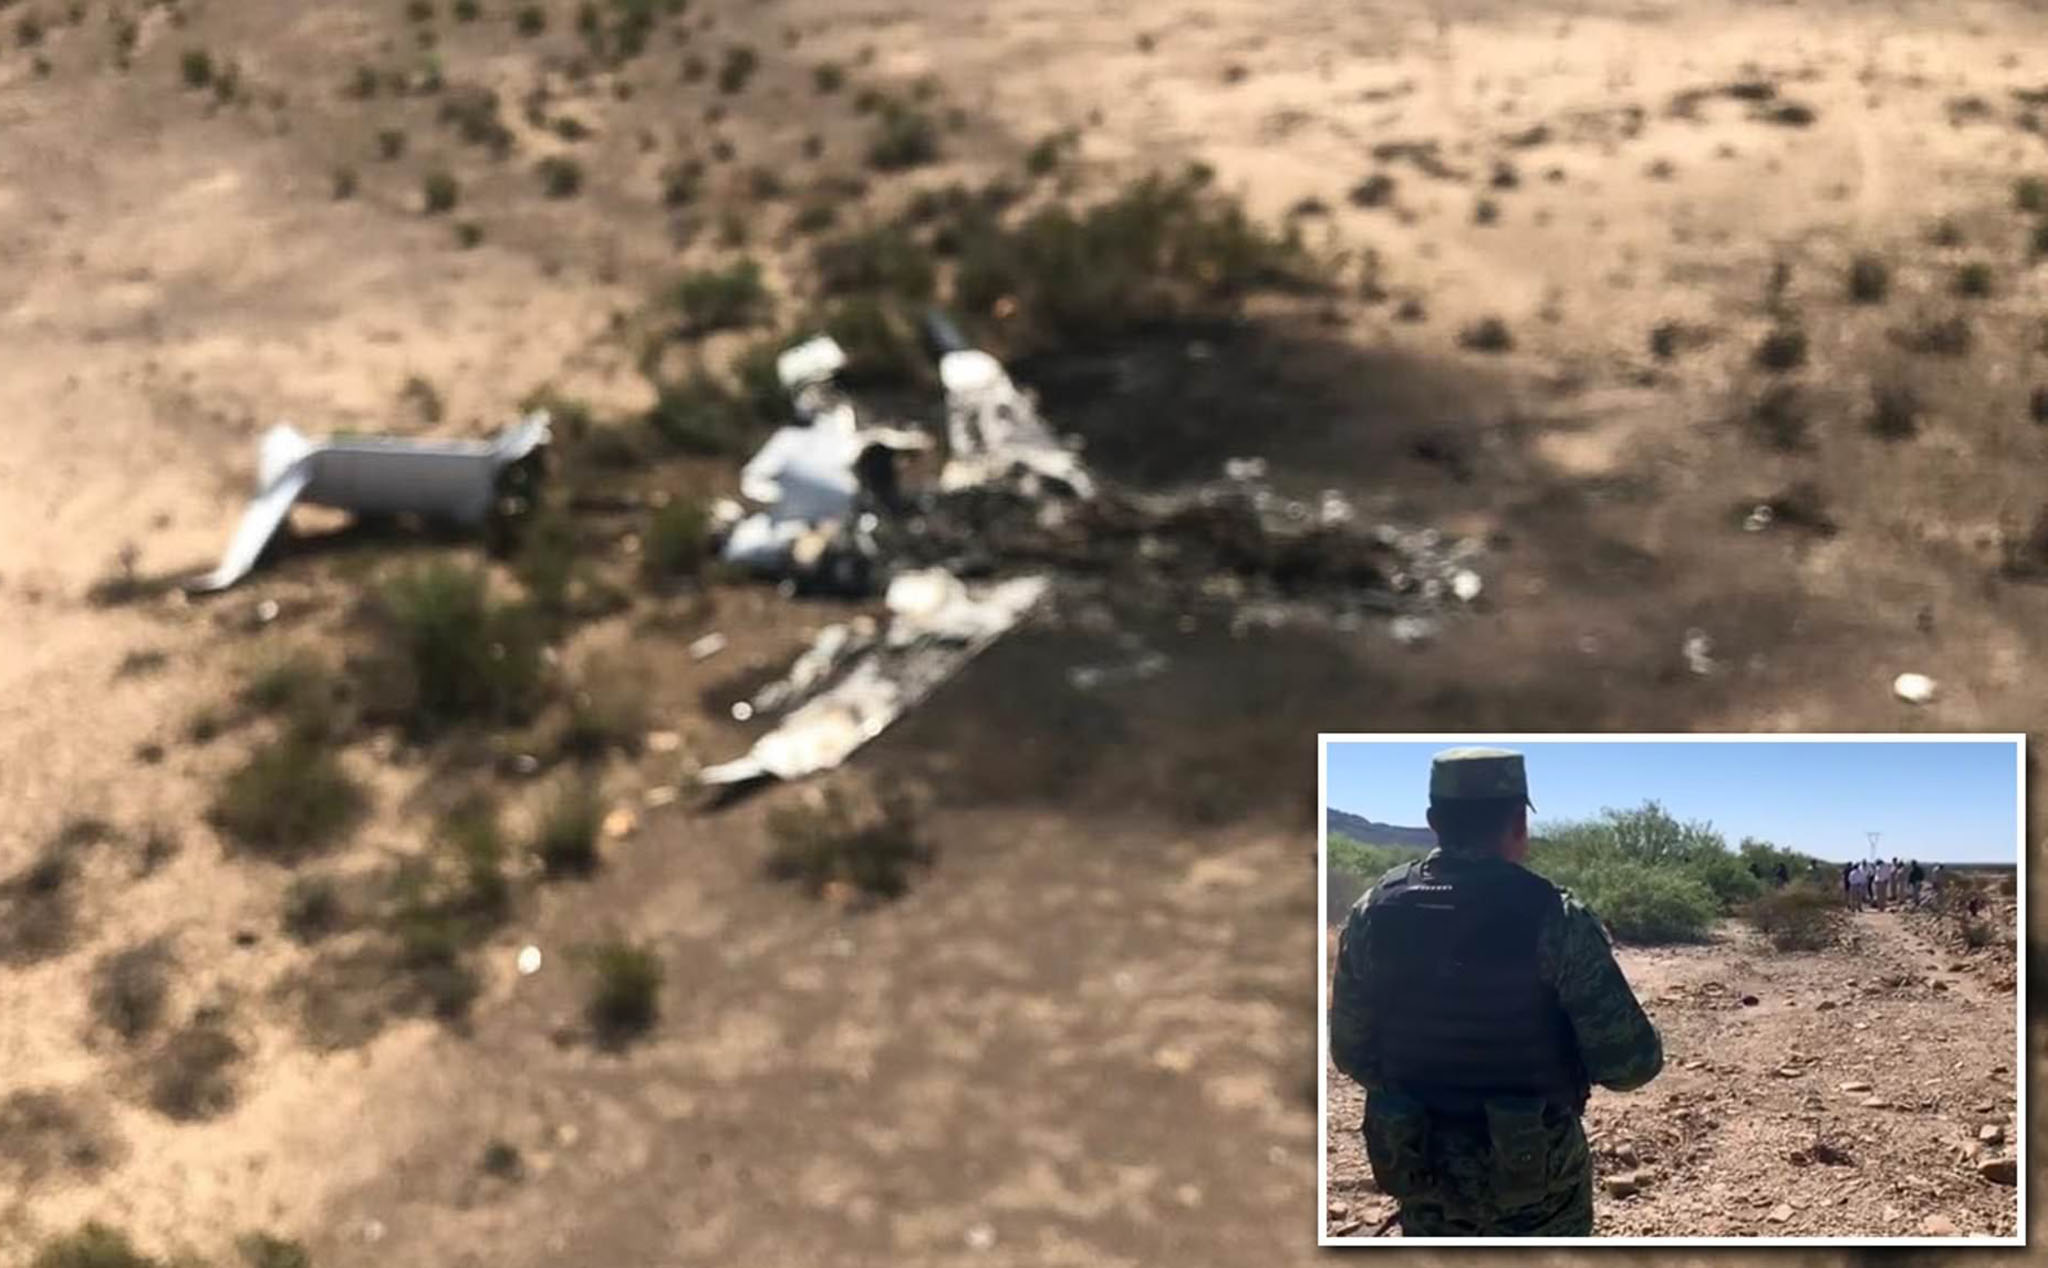 Máy bay lại rơi ở Mexico làm 13 người thiệt mạng, khả năng do thời tiết xấu